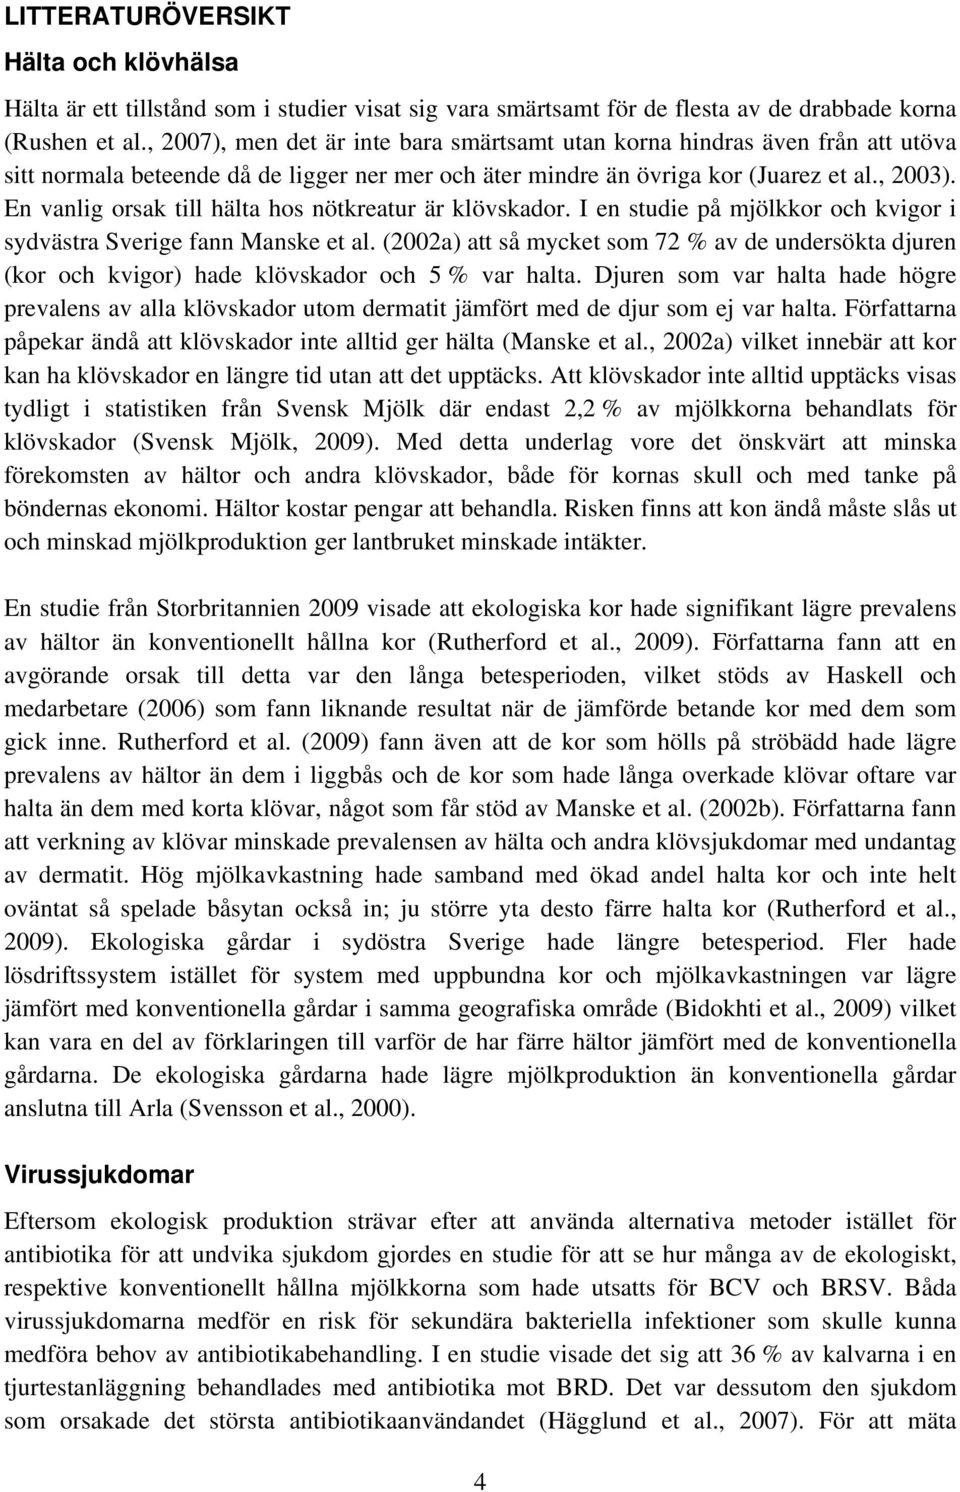 En vanlig orsak till hälta hos nötkreatur är klövskador. I en studie på mjölkkor och kvigor i sydvästra Sverige fann Manske et al.